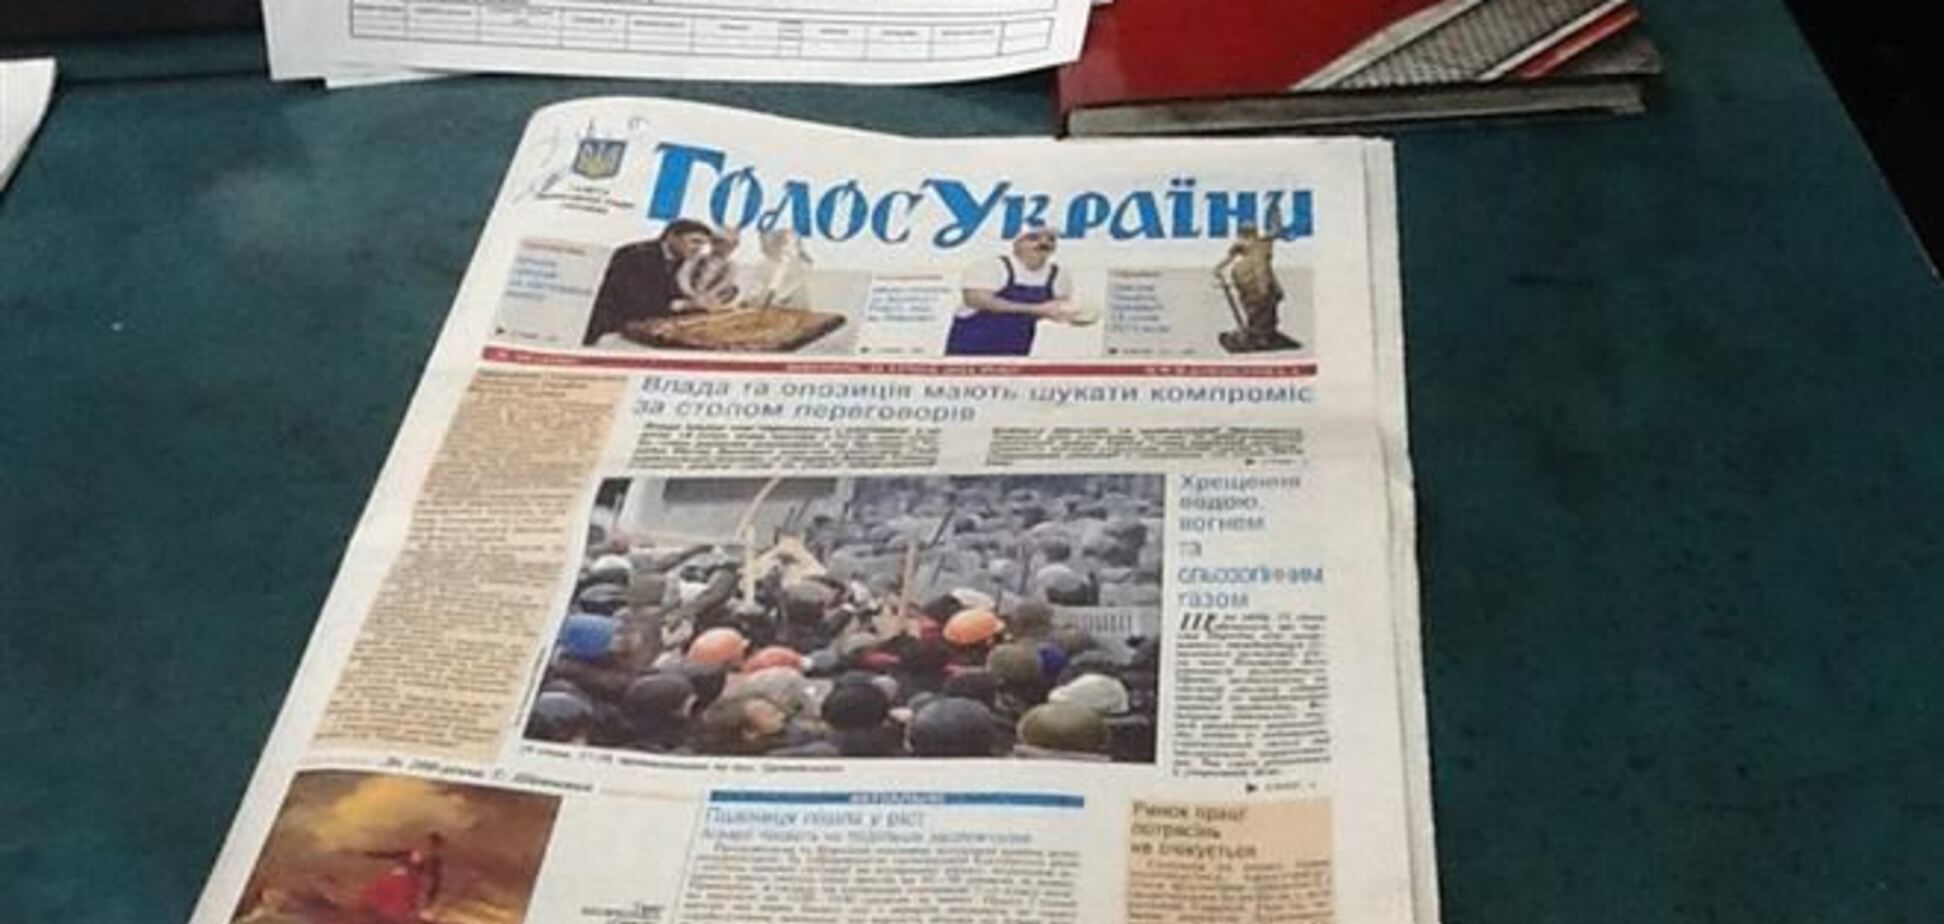 Яворівський: частина газет 'Голос України' вже відправили в області